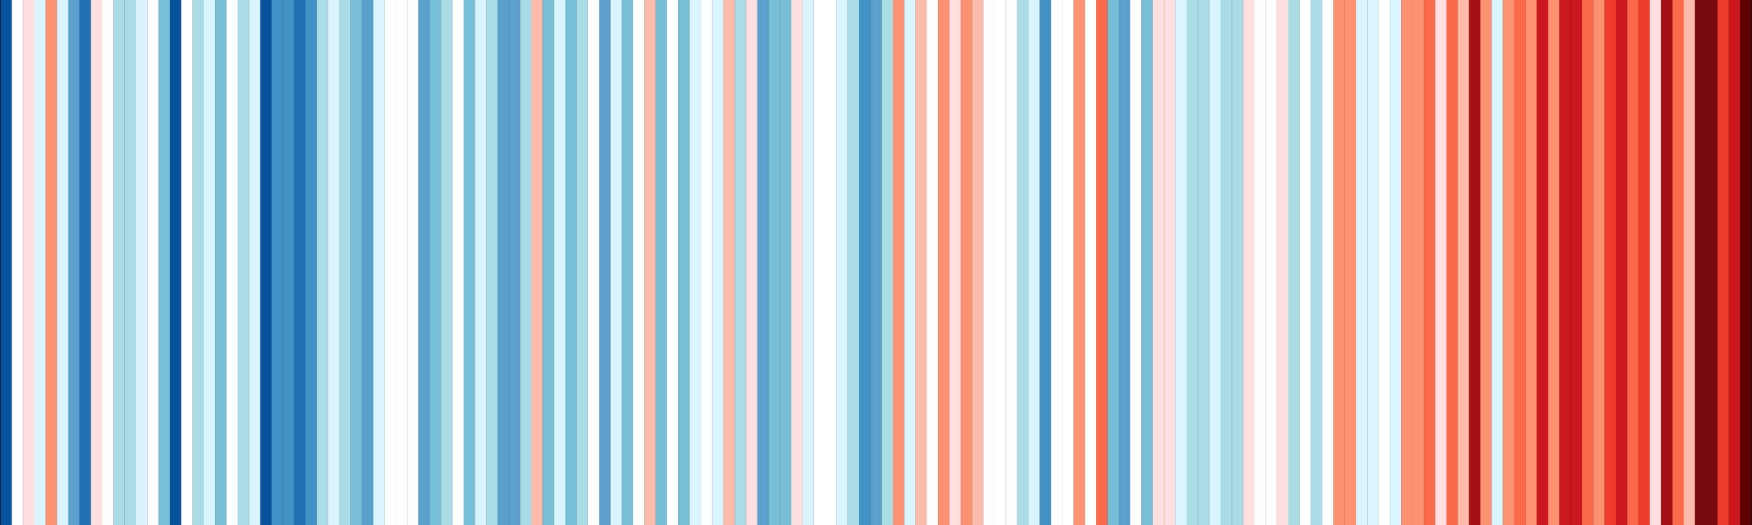 Farbige Streifen zeigen die Klimaerwärmung in der Stadt Zürich von 1864 bis 2018.